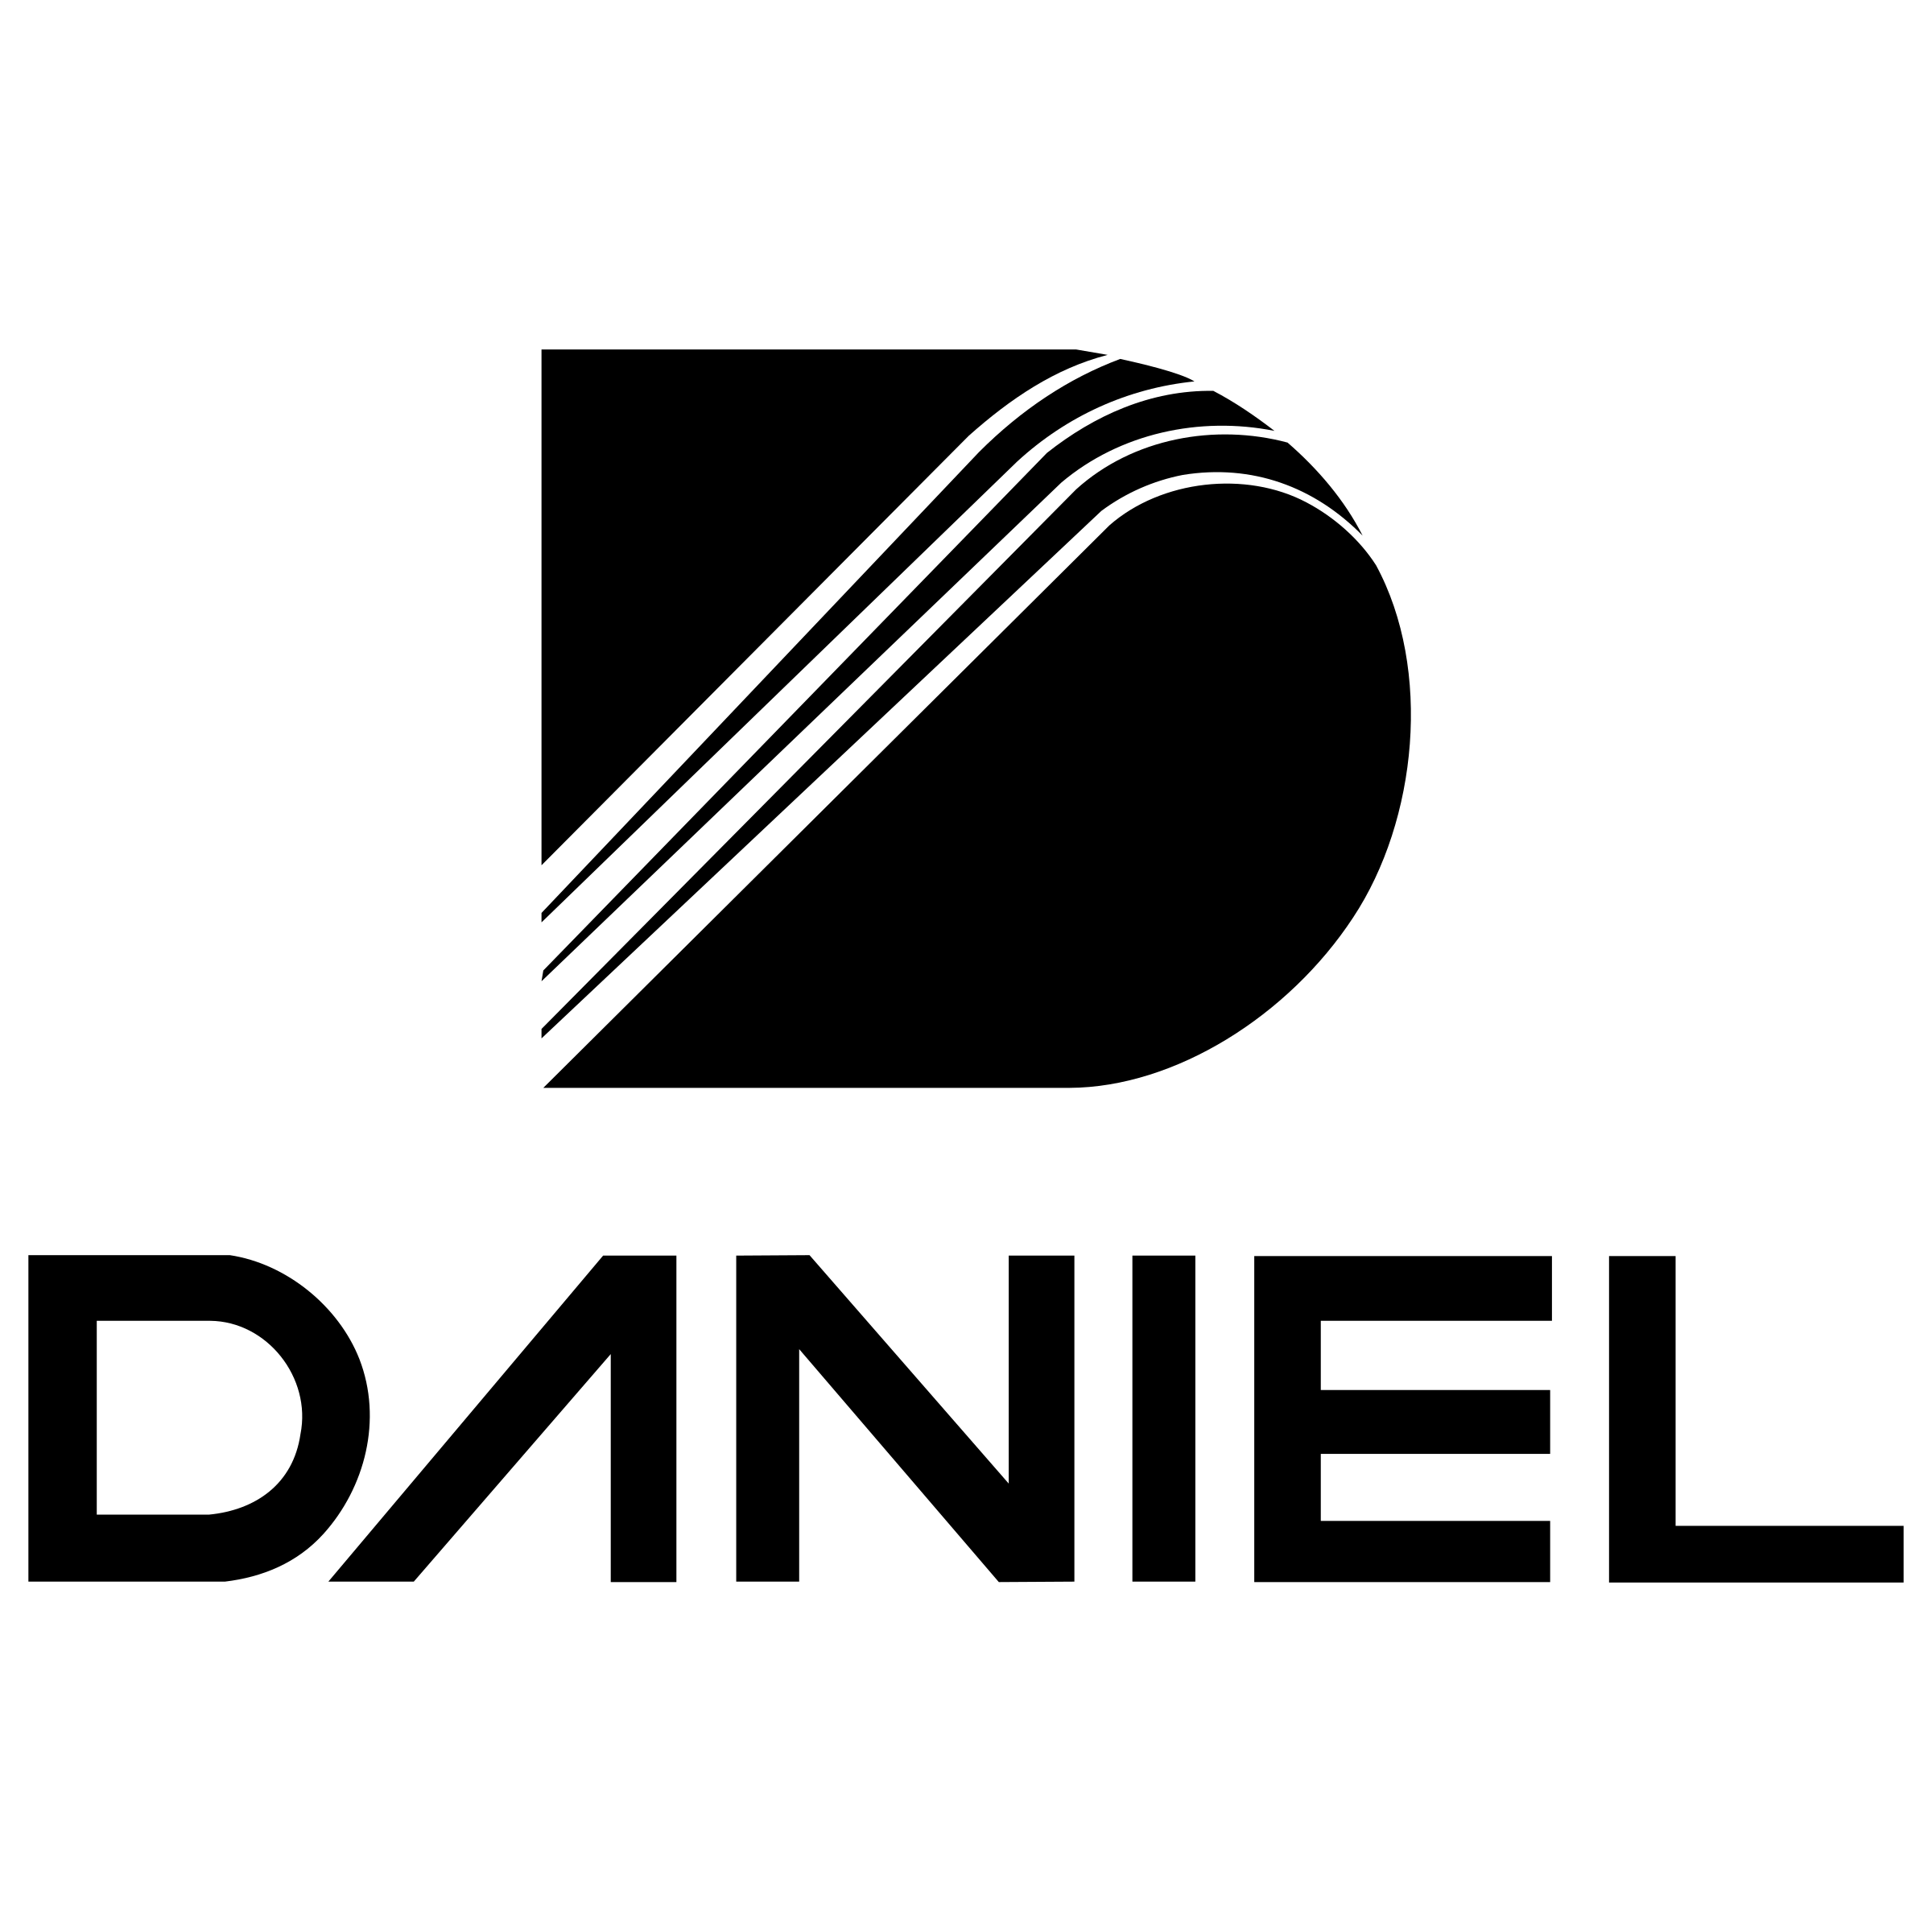 Daniel Logo - Daniel Logo PNG Transparent & SVG Vector